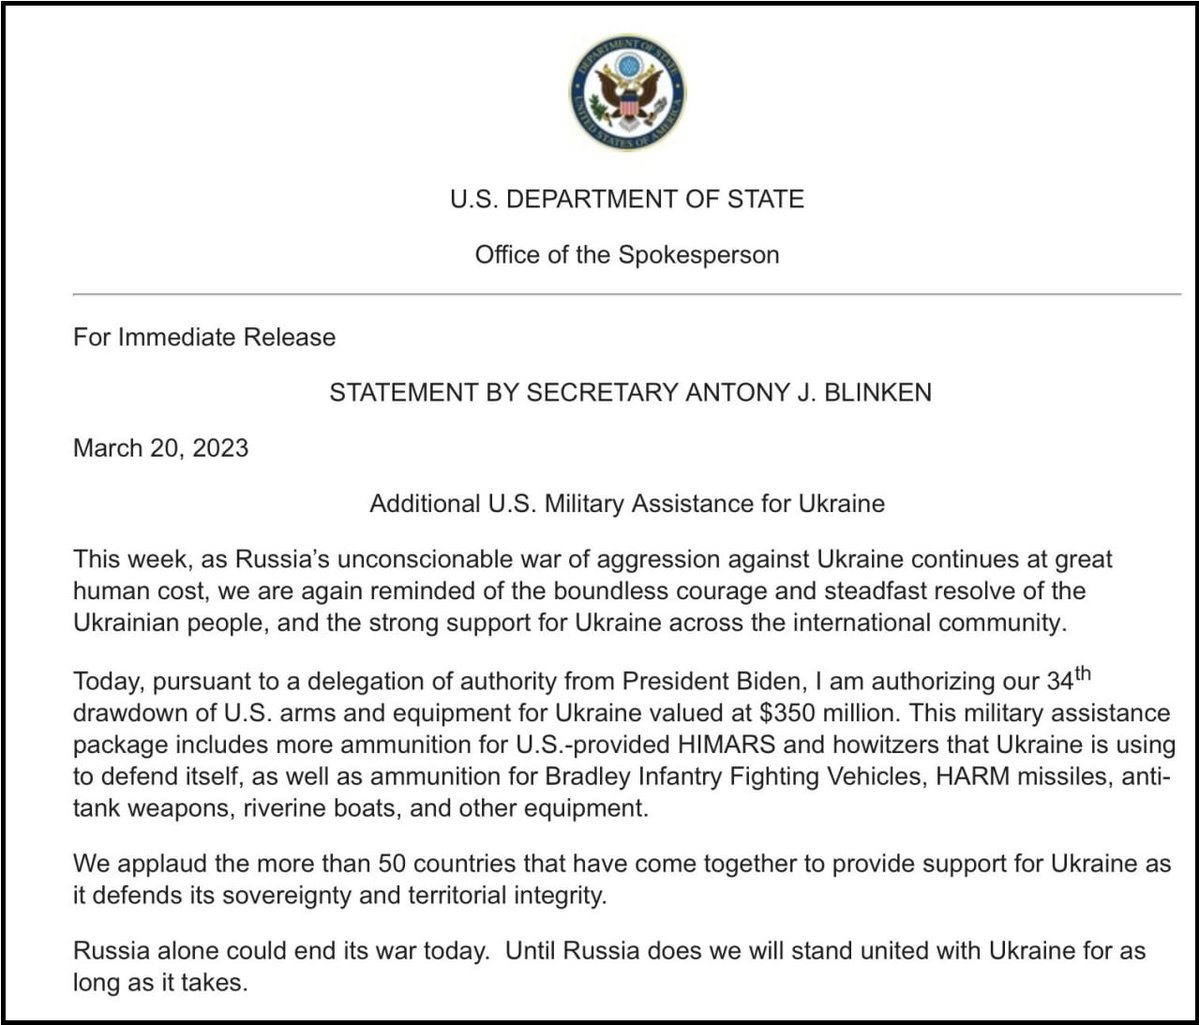 Die Vereinigten Staaten genehmigten ein neues Sicherheitshilfepaket in Höhe von 350 Millionen US-Dollar für die Ukraine. Es umfasst Munition für M142 HIMARS/M270 MLRS und Haubitzen sowie Munition für Bradley-IFVs, HARM-Luft-Boden-Antistrahlungsraketen, Panzerabwehrraketen und Flussboote